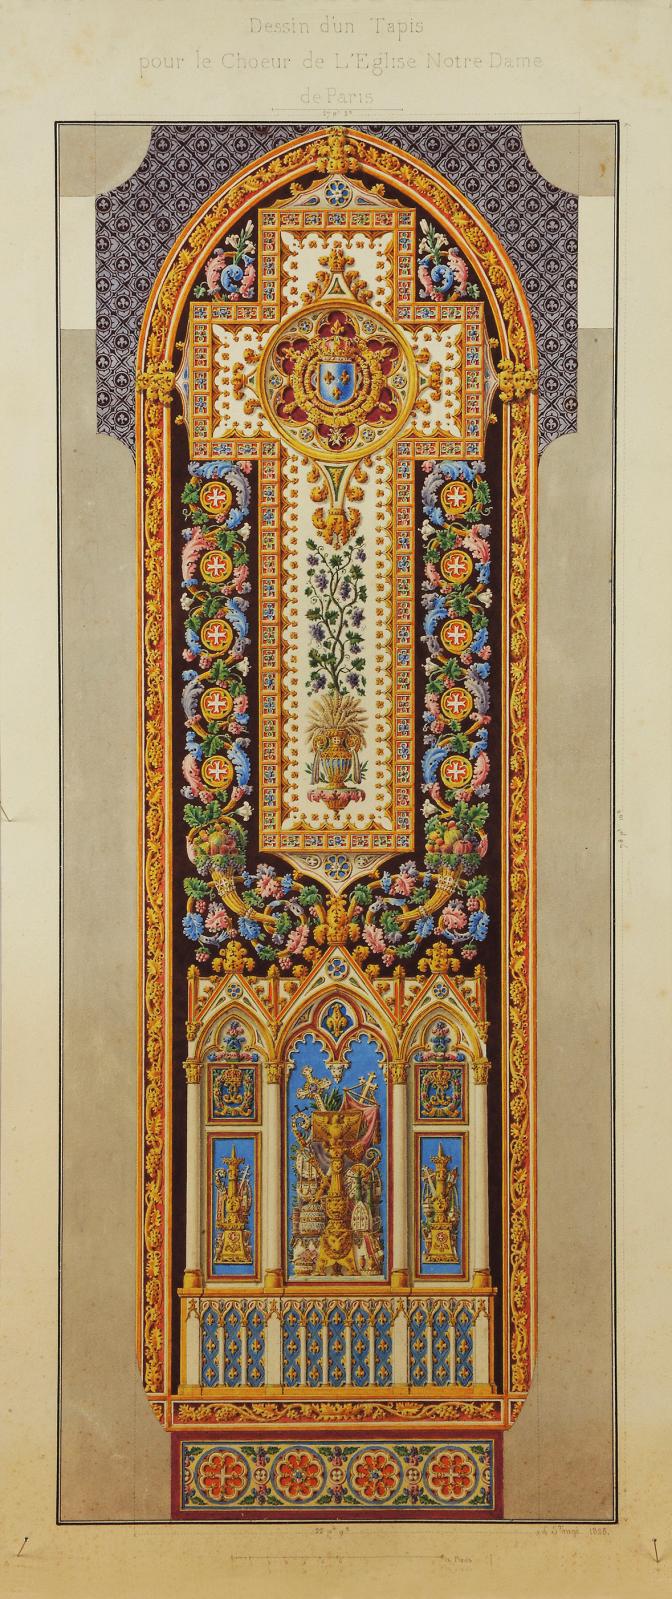 Jacques-Louis de La Hamayde de Saint-Ange (1780-1860), project for the carpet of Notre Dame of Paris, Mobilier National archives.© Isabell